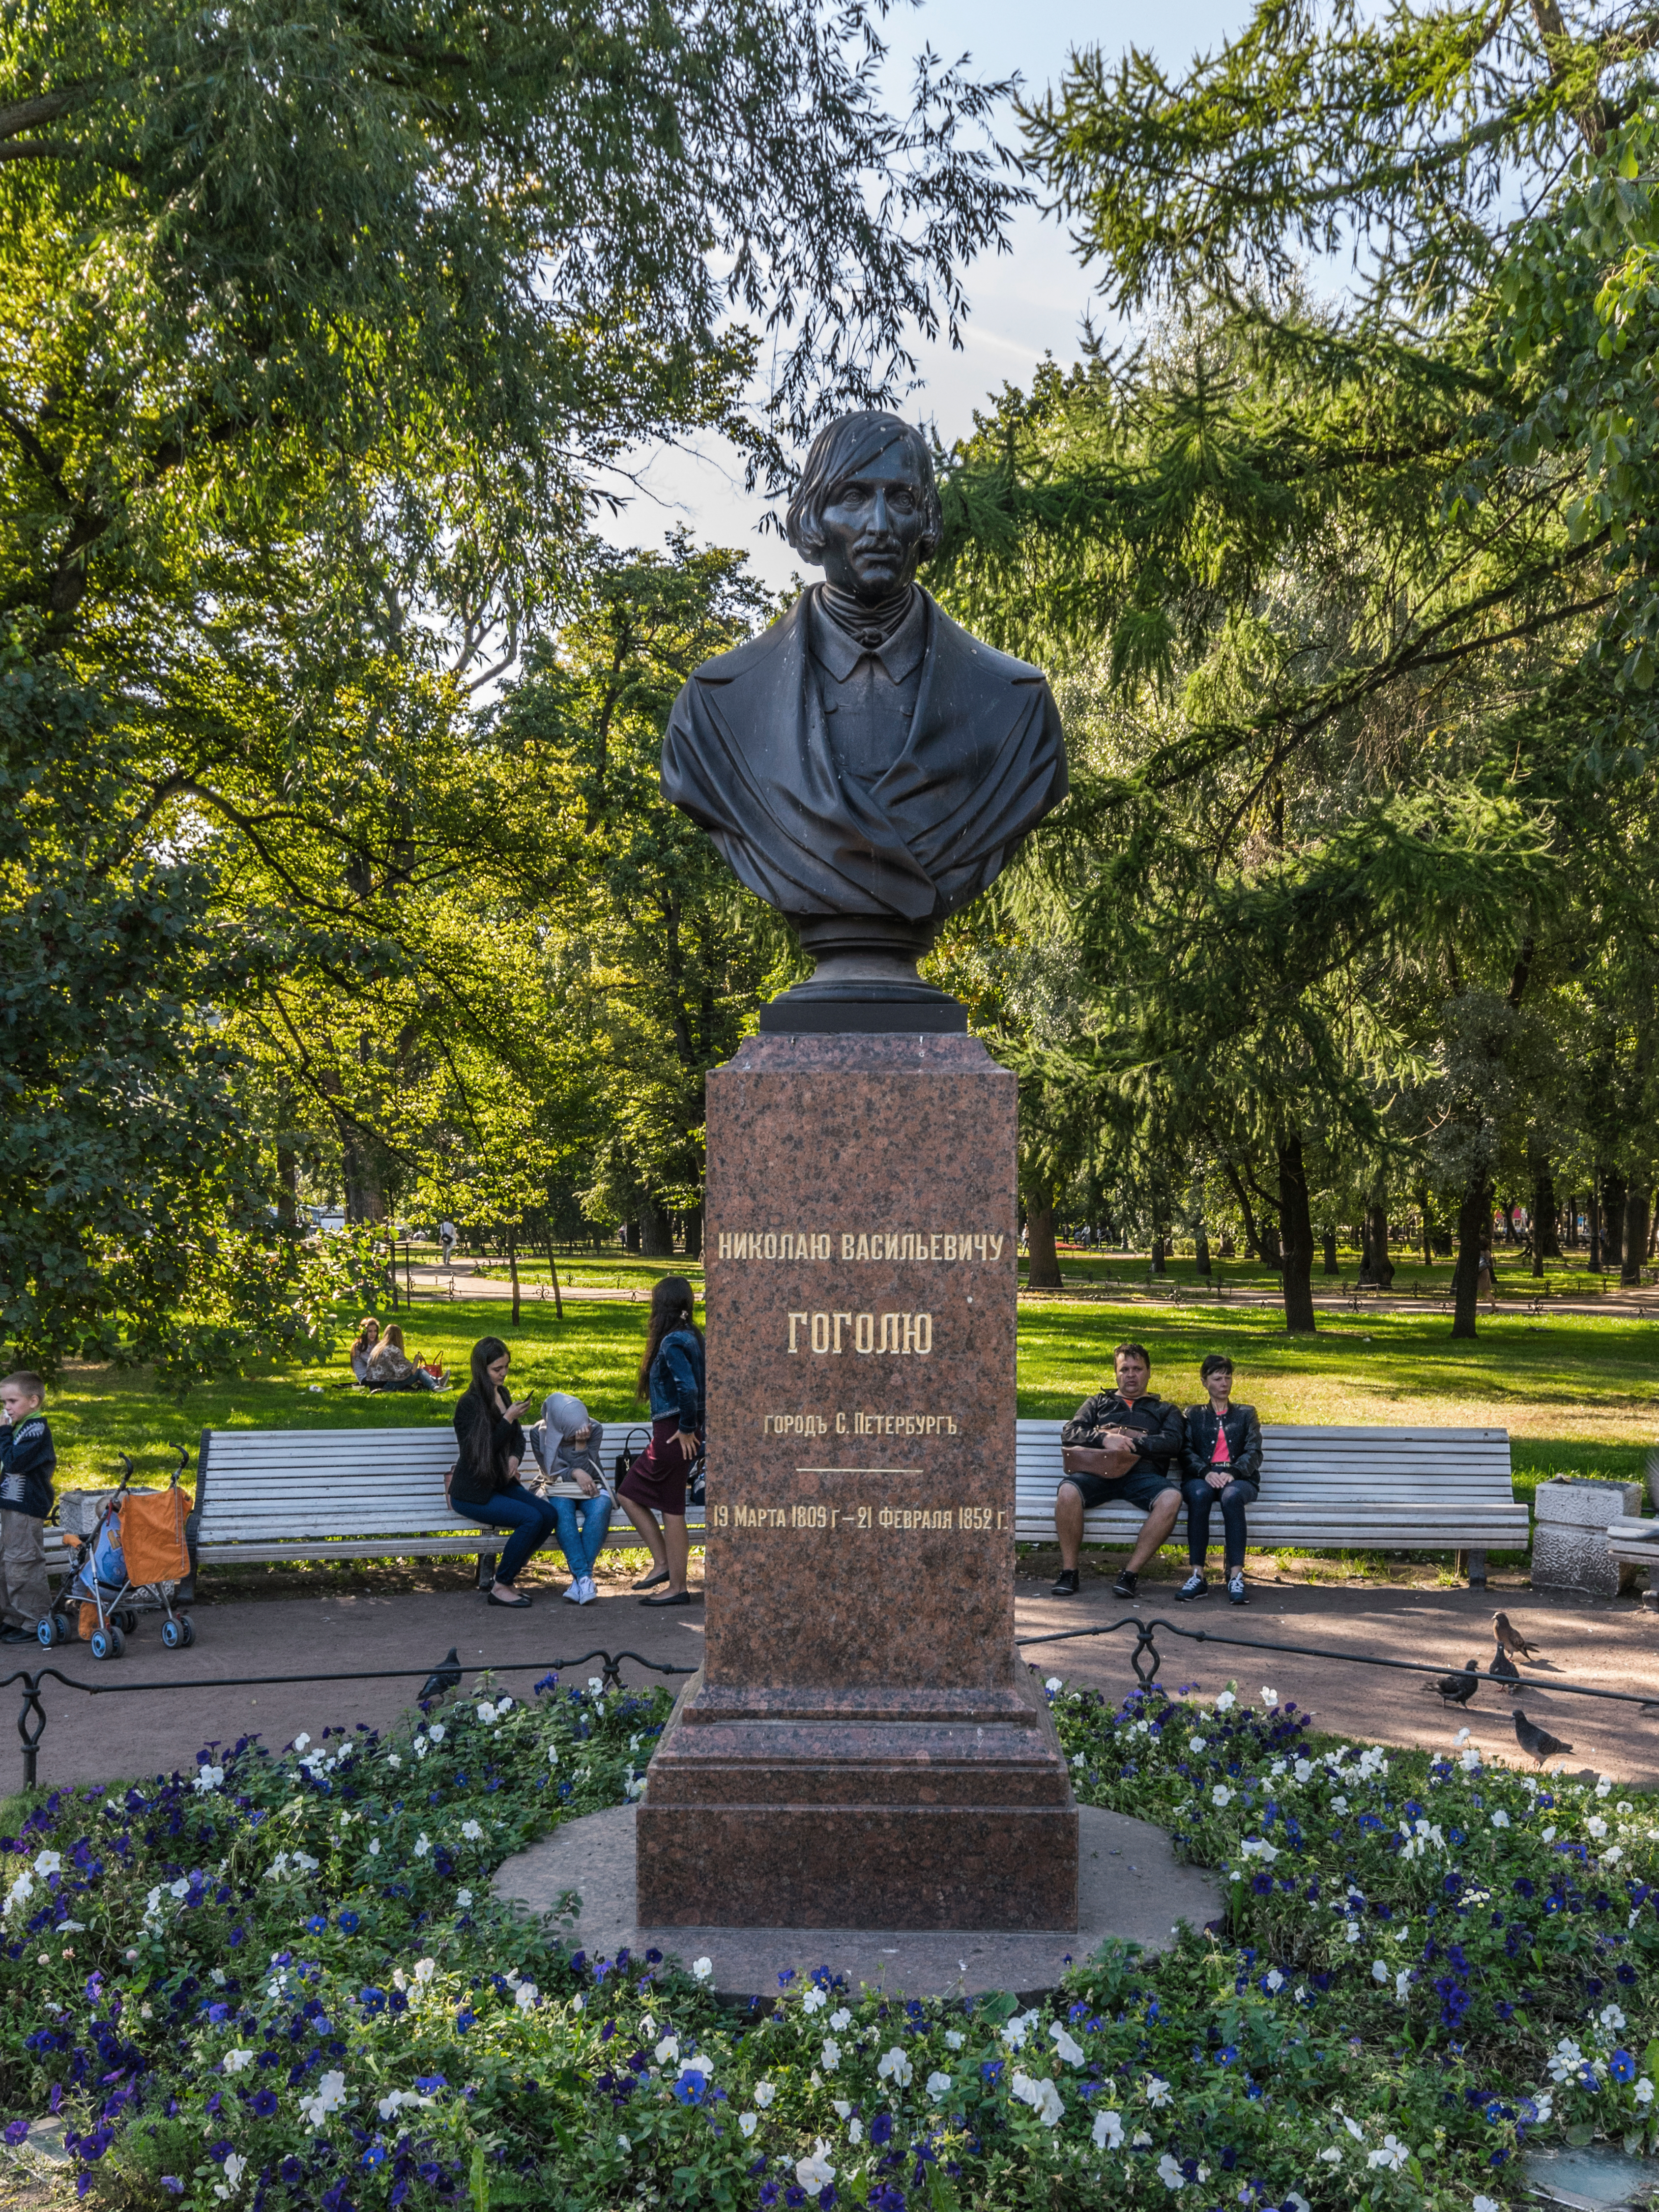 Monument to Gogol in Alexander Garden